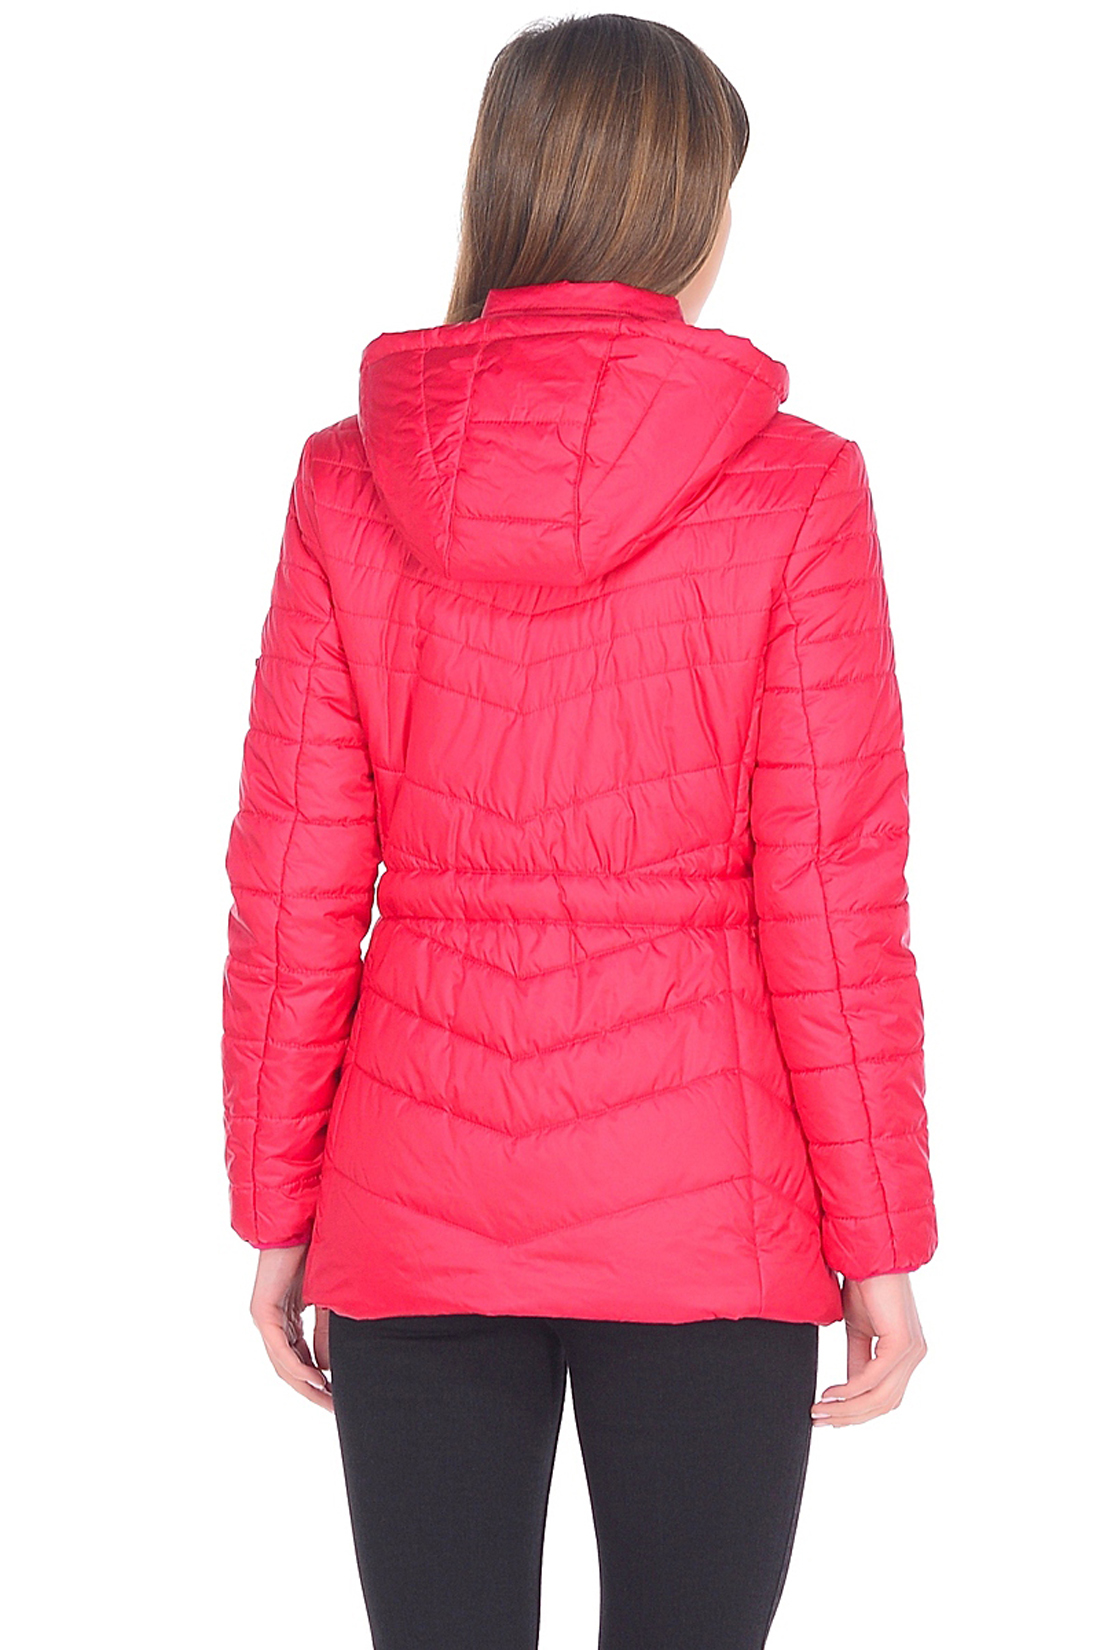 Приталенная куртка с капюшоном (арт. baon B038202), размер L, цвет красный Приталенная куртка с капюшоном (арт. baon B038202) - фото 2